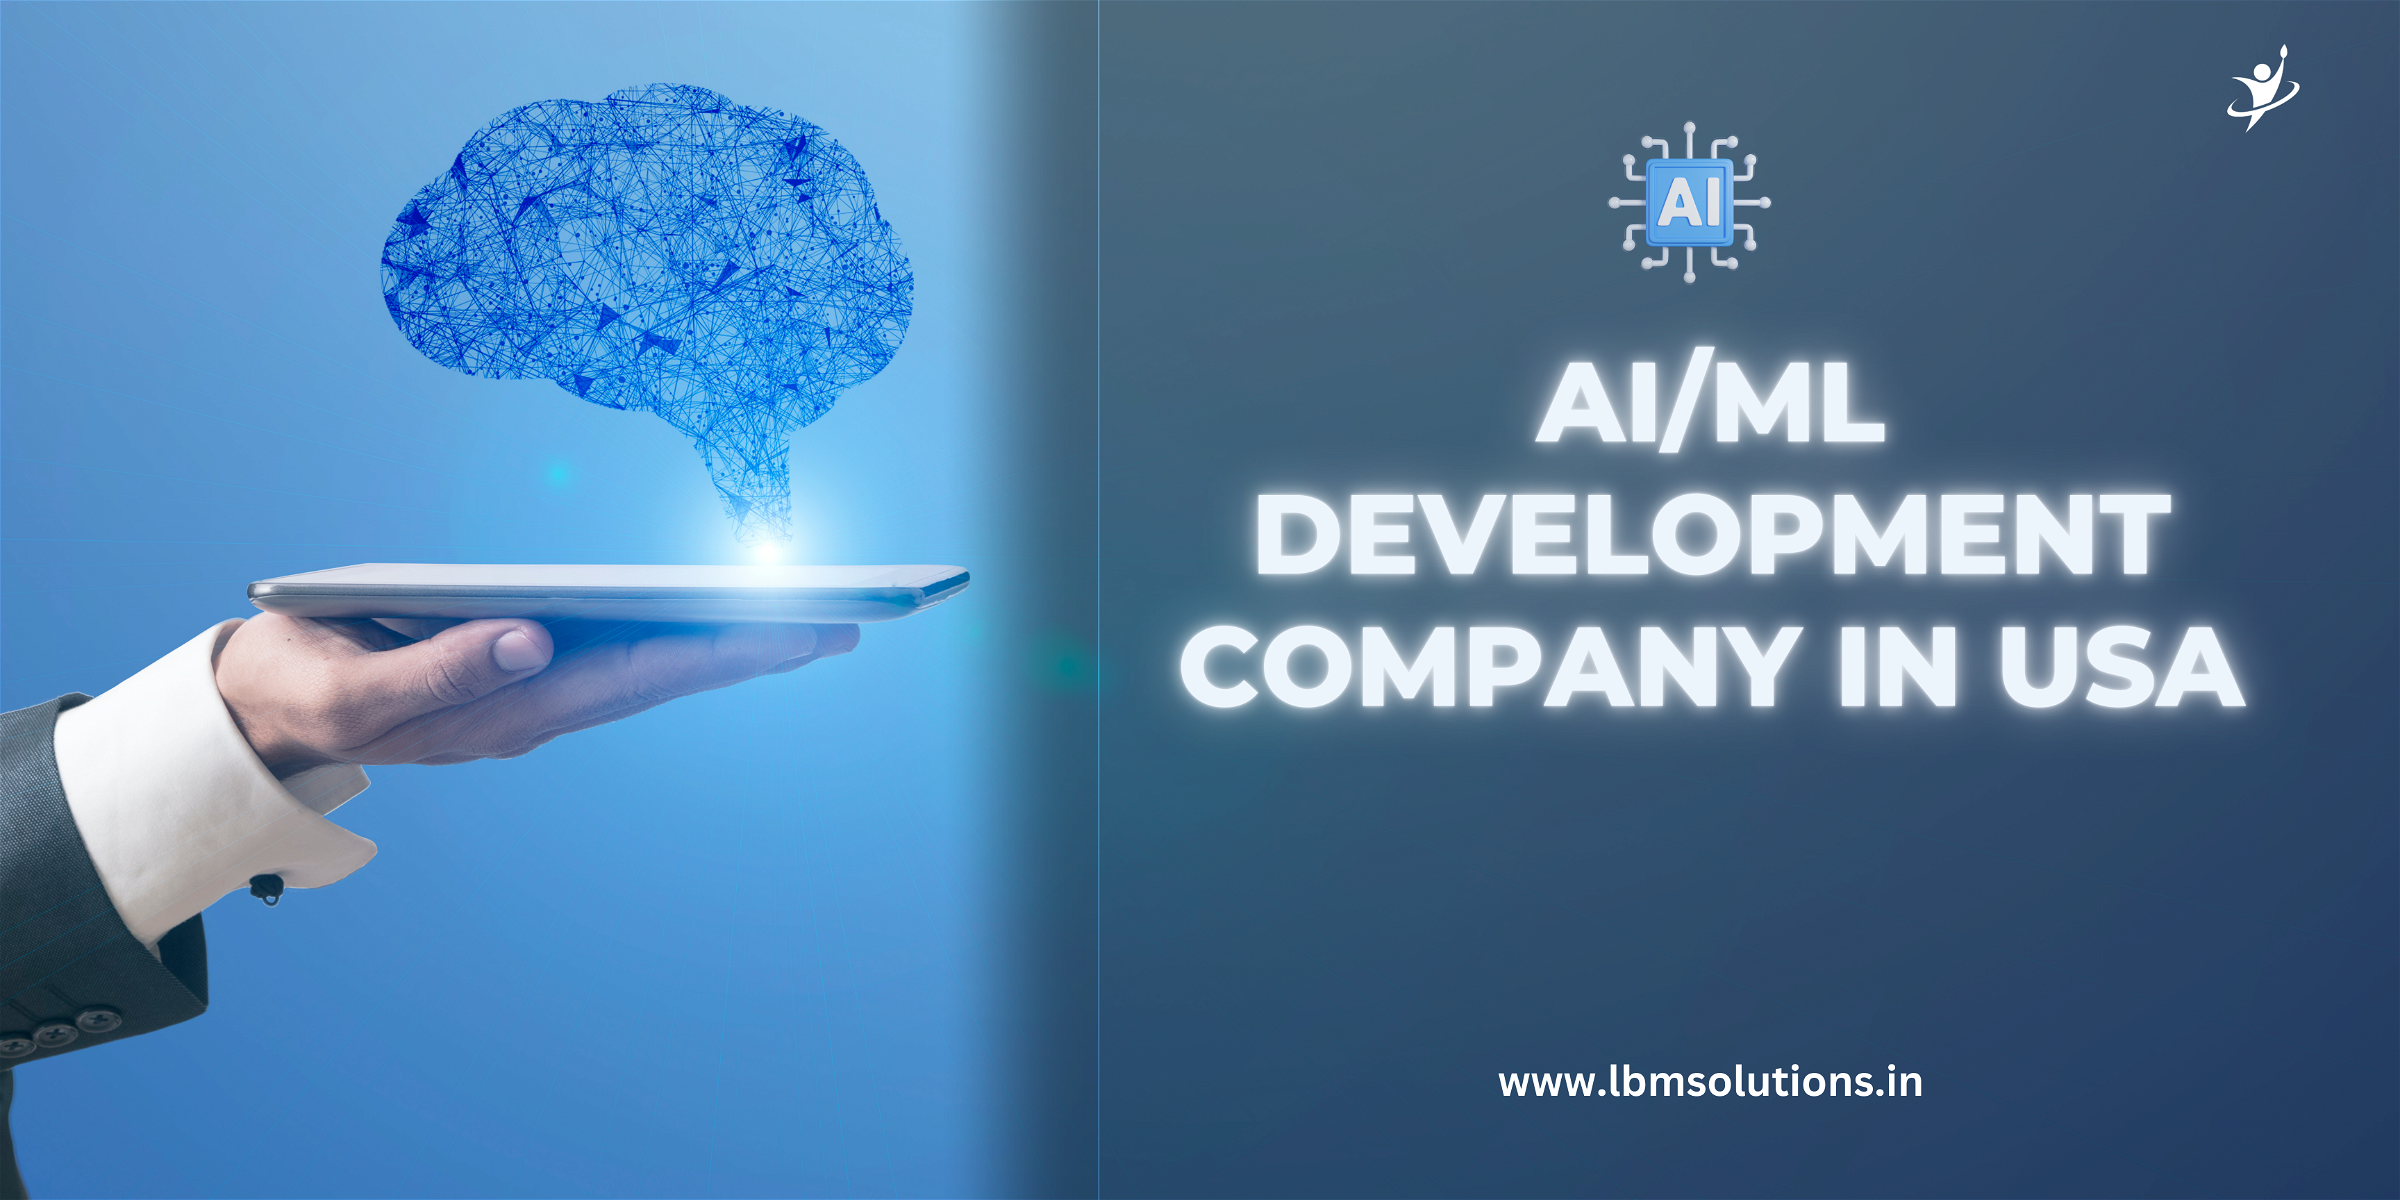 AI/ML Development Company in USA